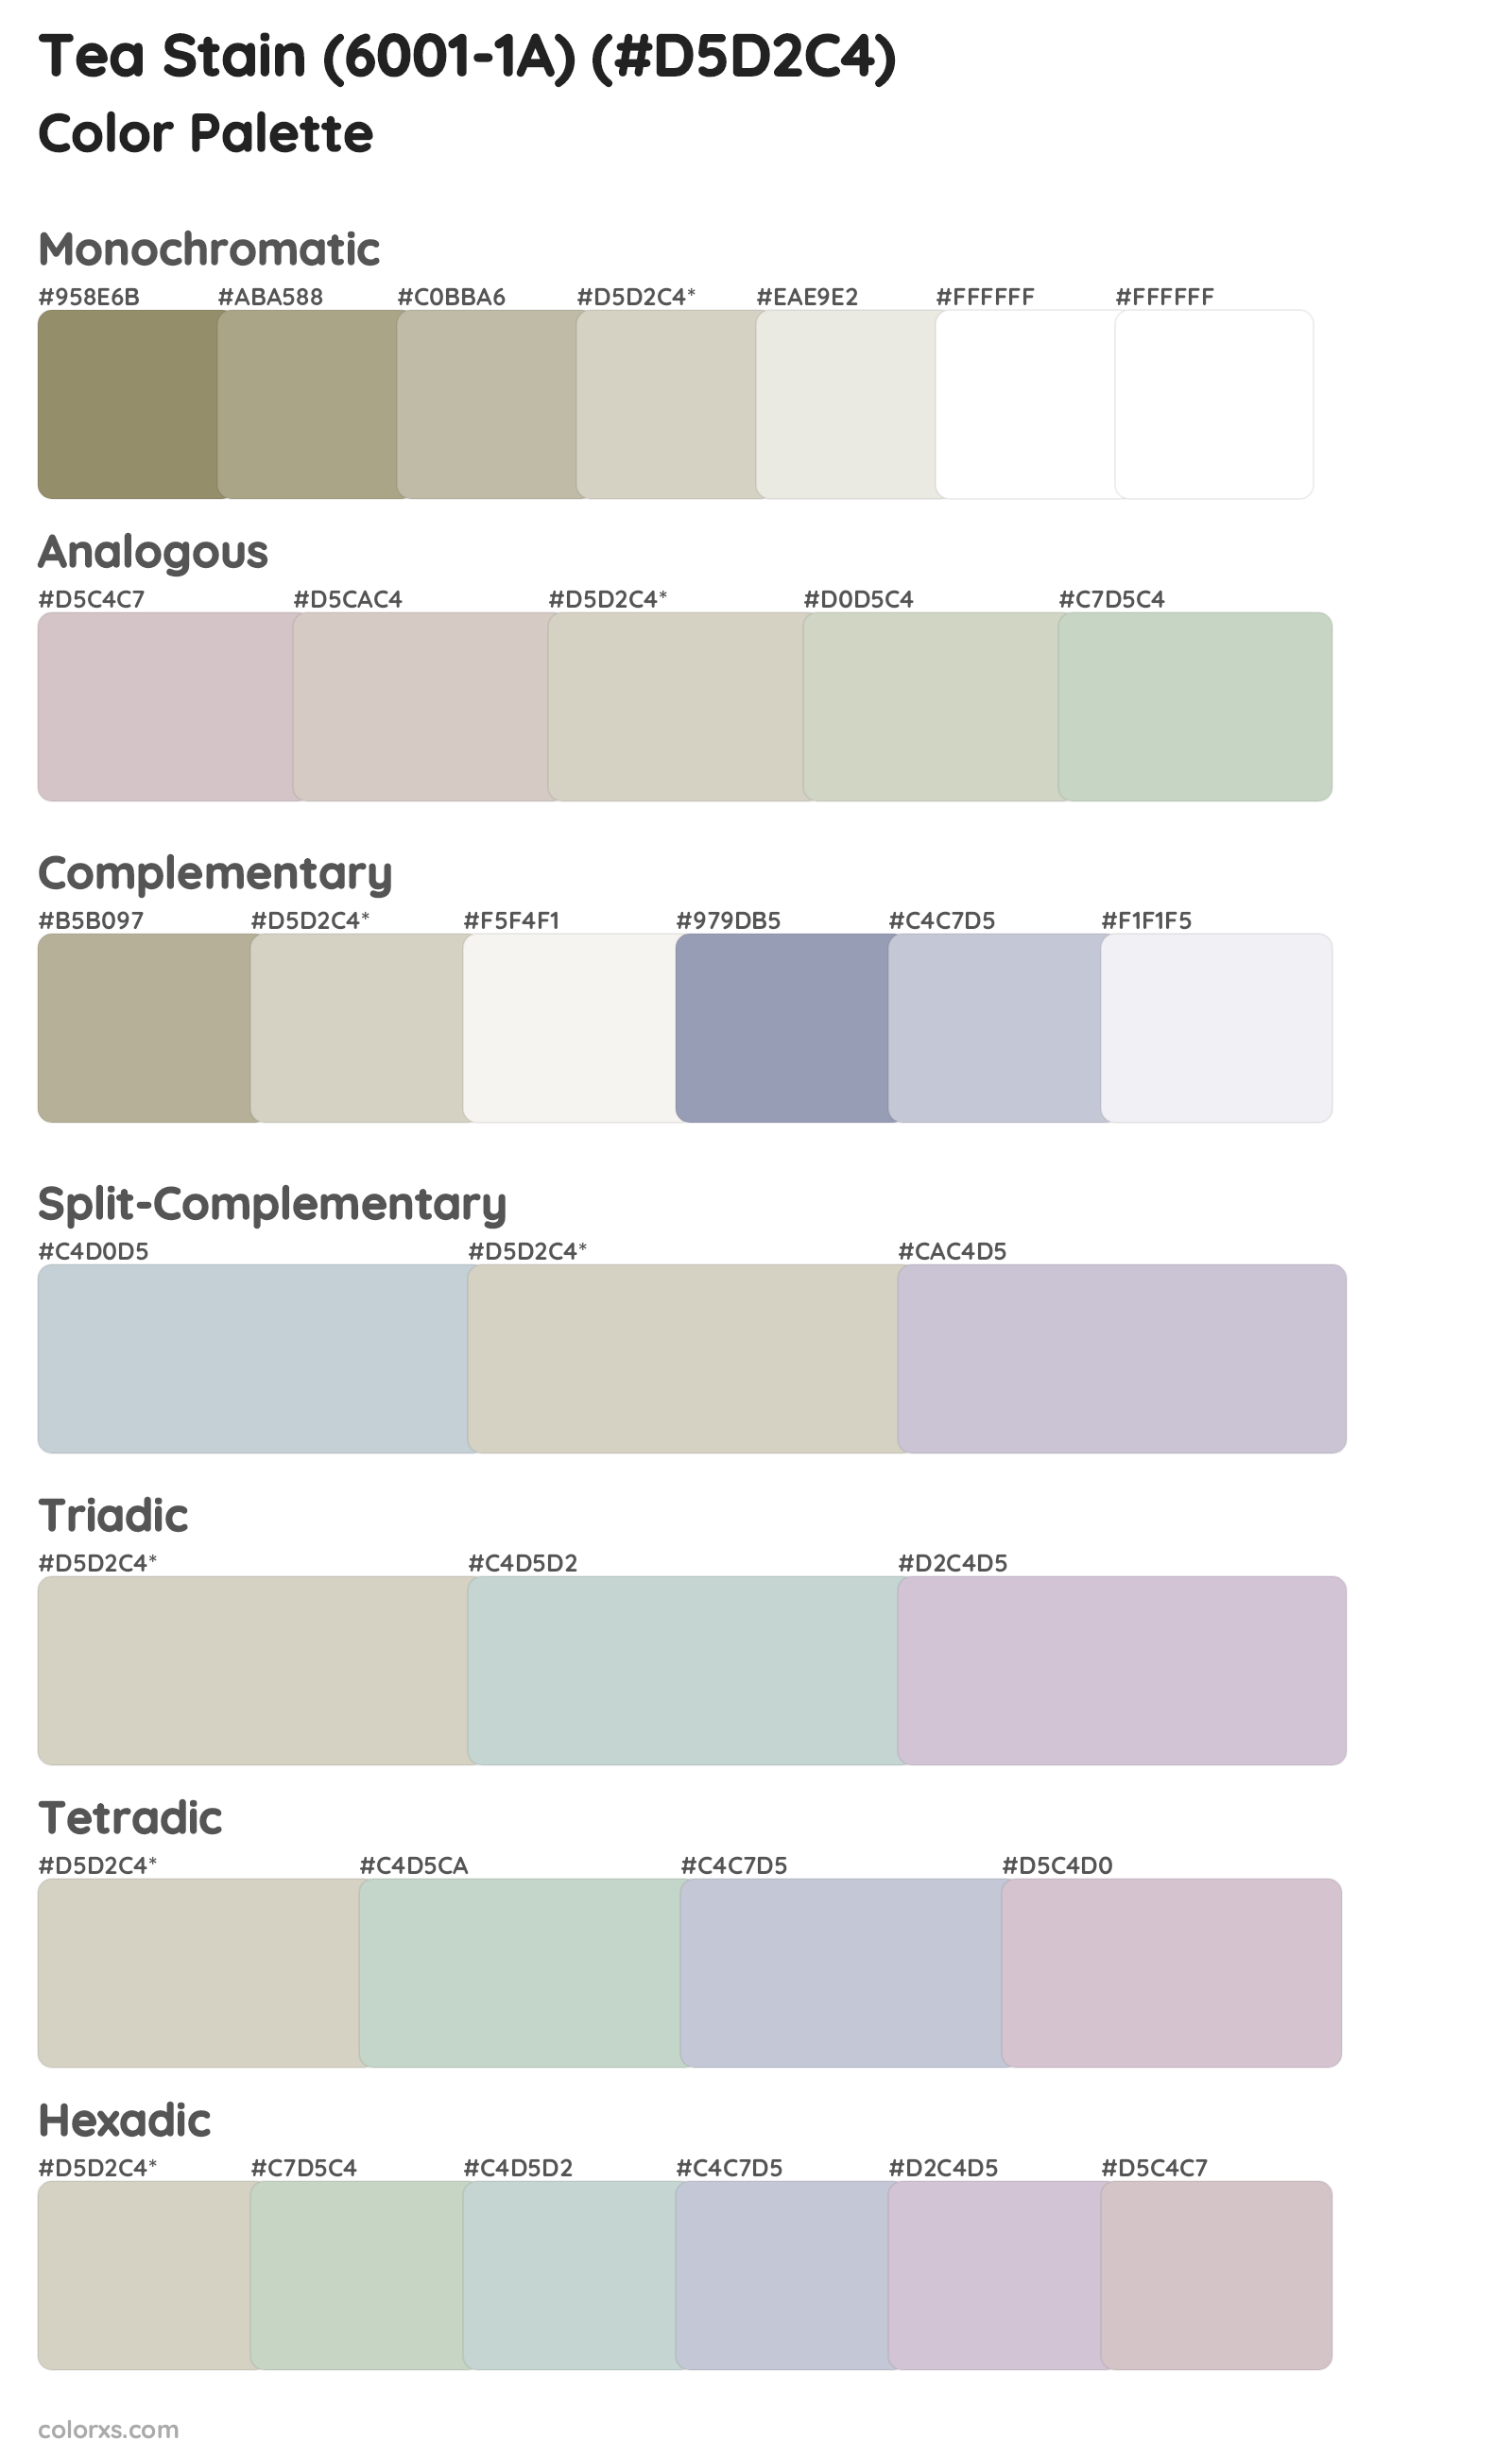 Tea Stain (6001-1A) Color Scheme Palettes